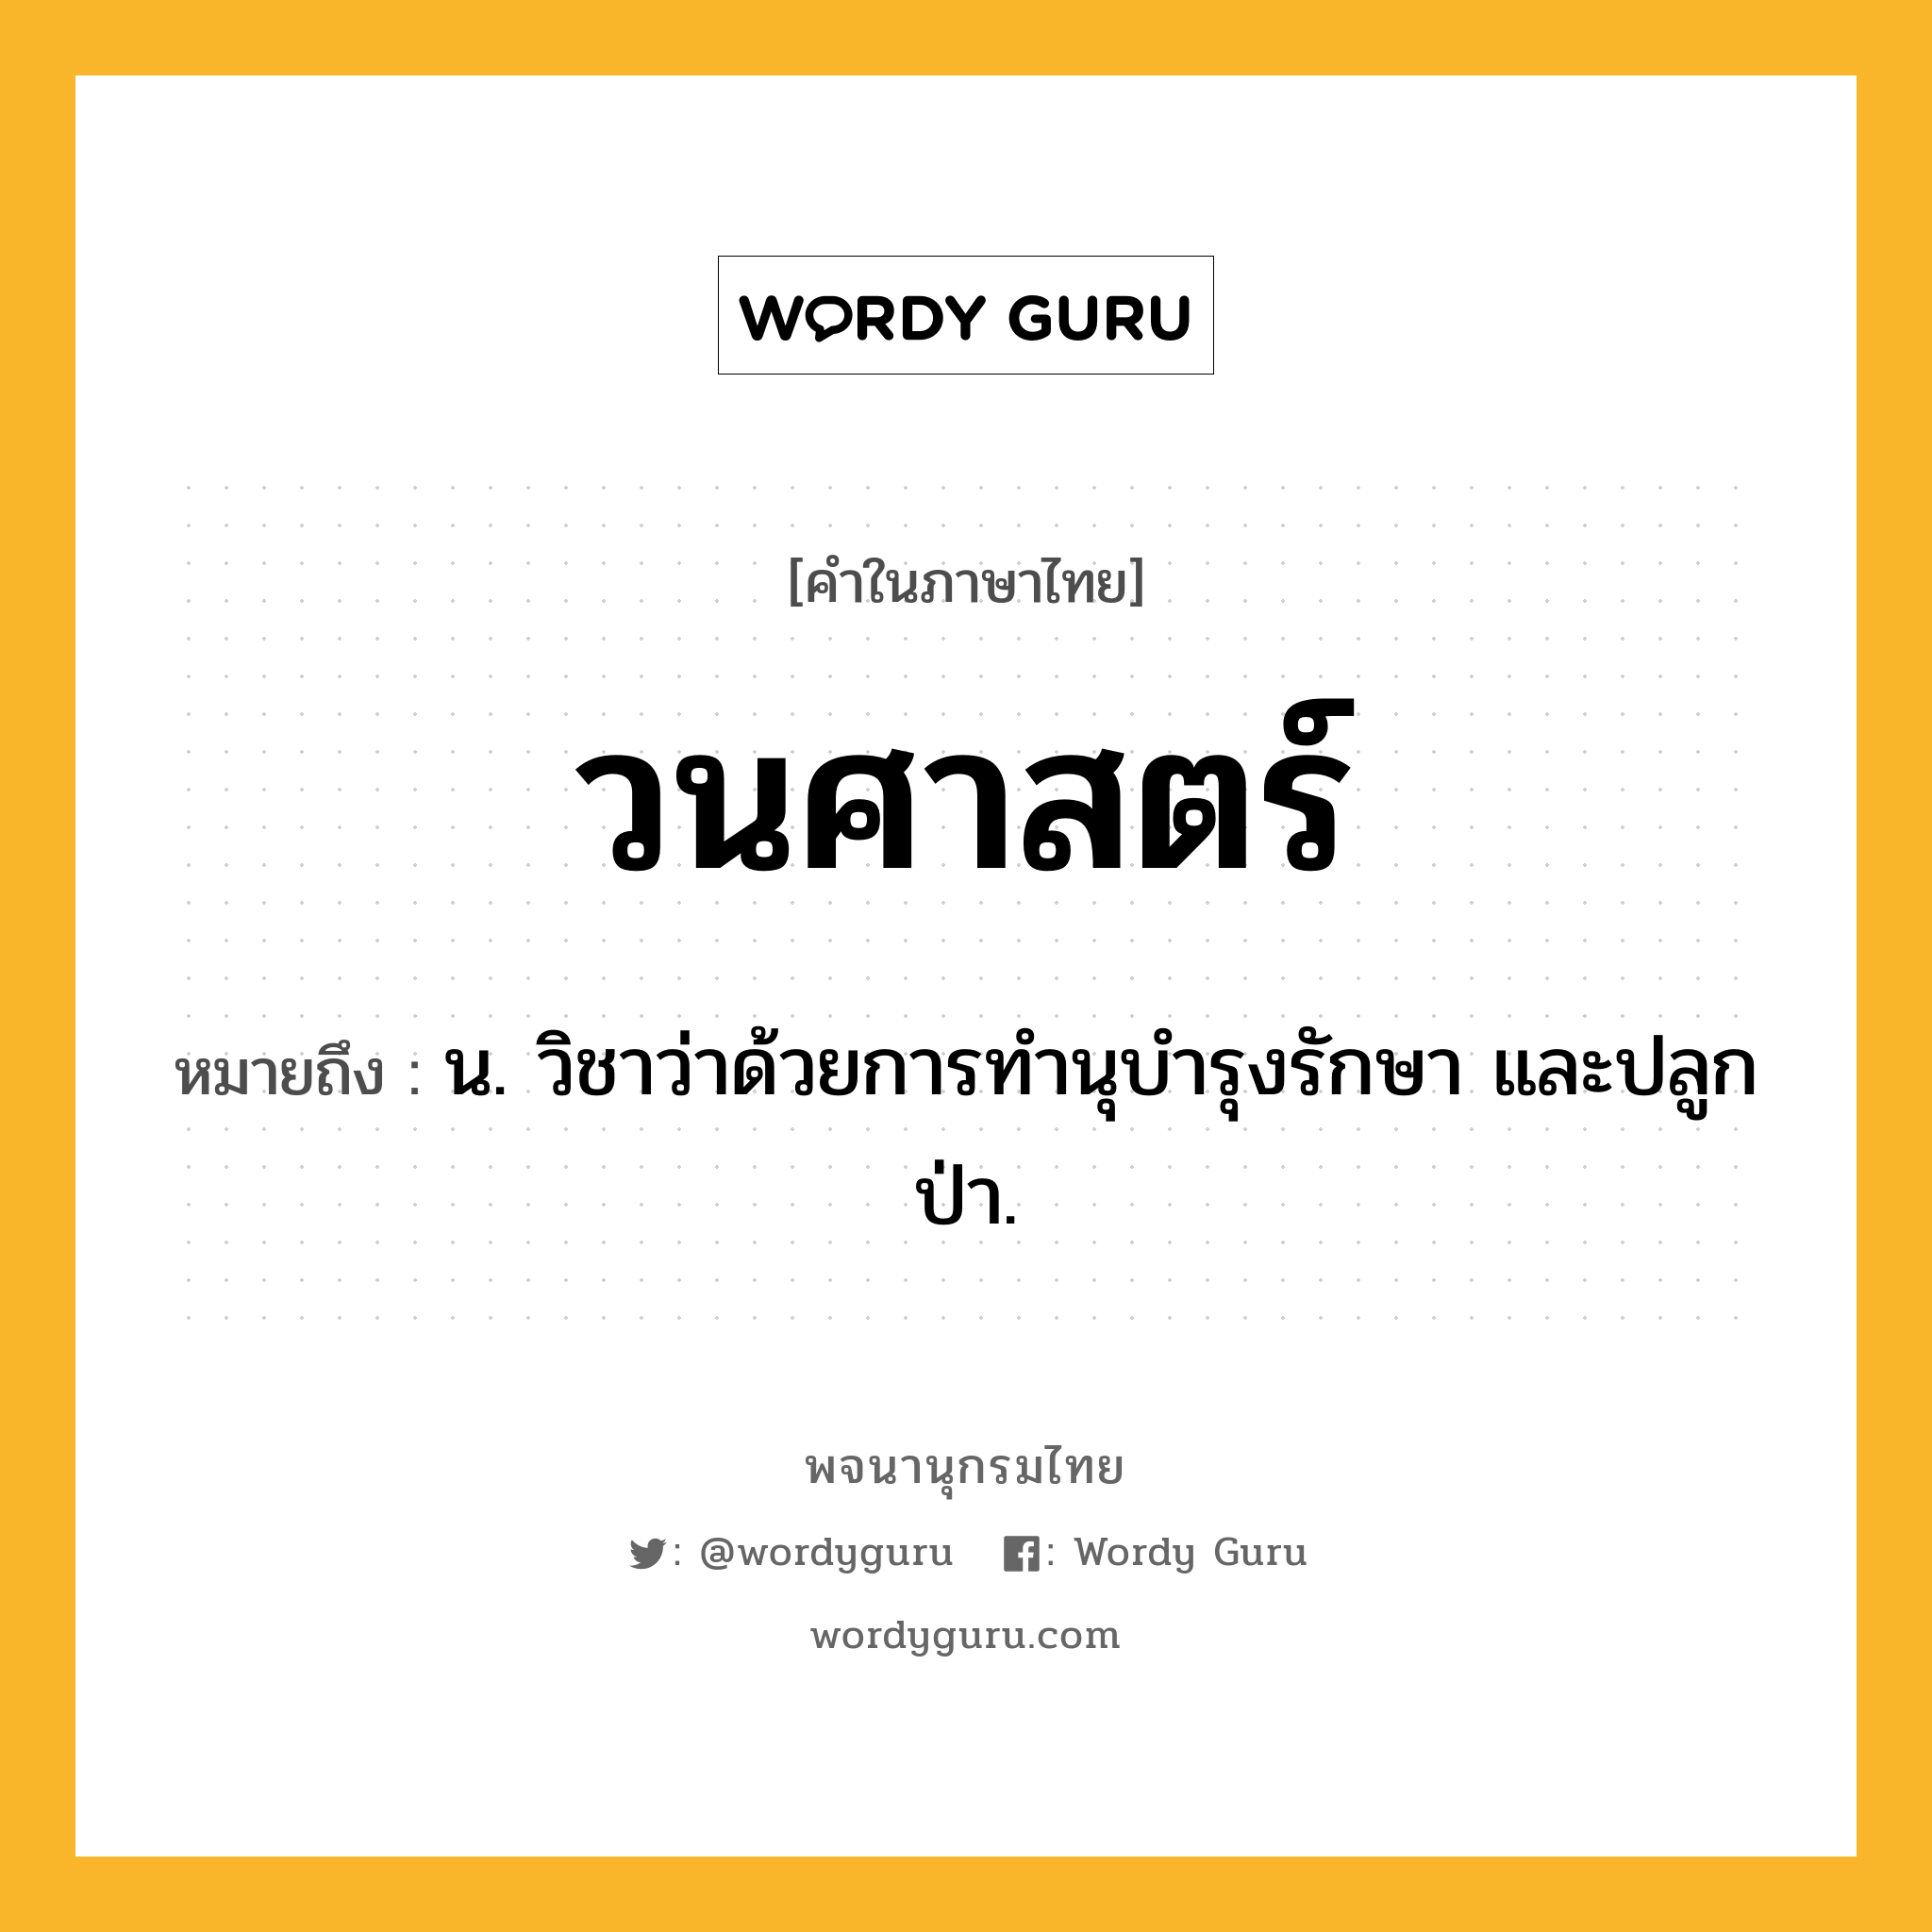 วนศาสตร์ หมายถึงอะไร?, คำในภาษาไทย วนศาสตร์ หมายถึง น. วิชาว่าด้วยการทํานุบํารุงรักษา และปลูกป่า.